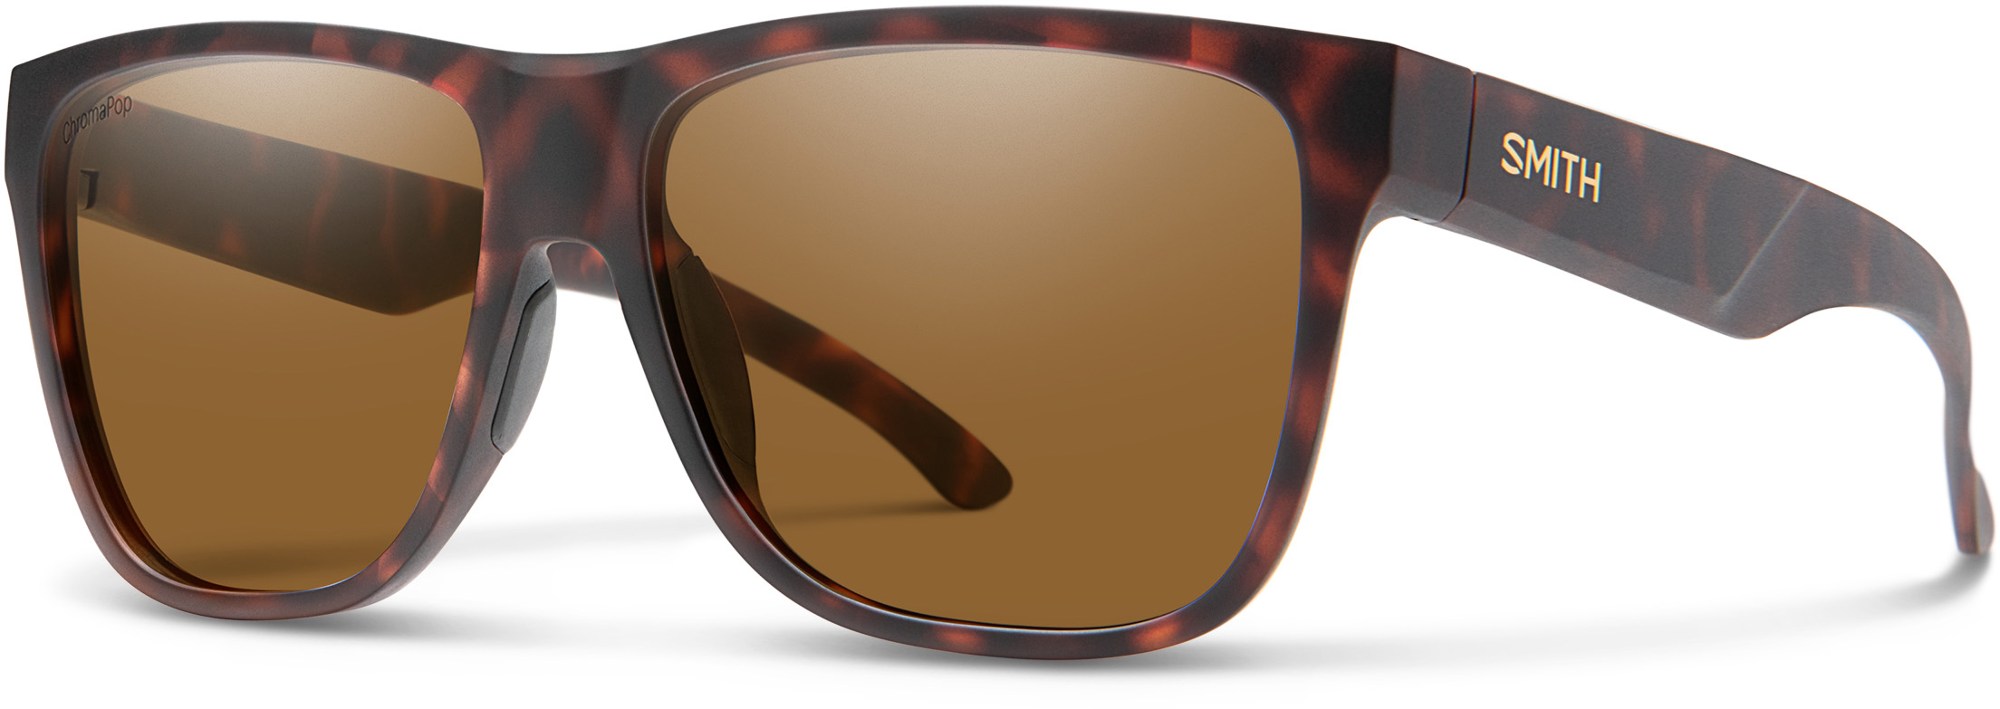 Поляризованные солнцезащитные очки Lowdown XL 2 ChromaPop Smith, коричневый футболка женская mf львица очки xl